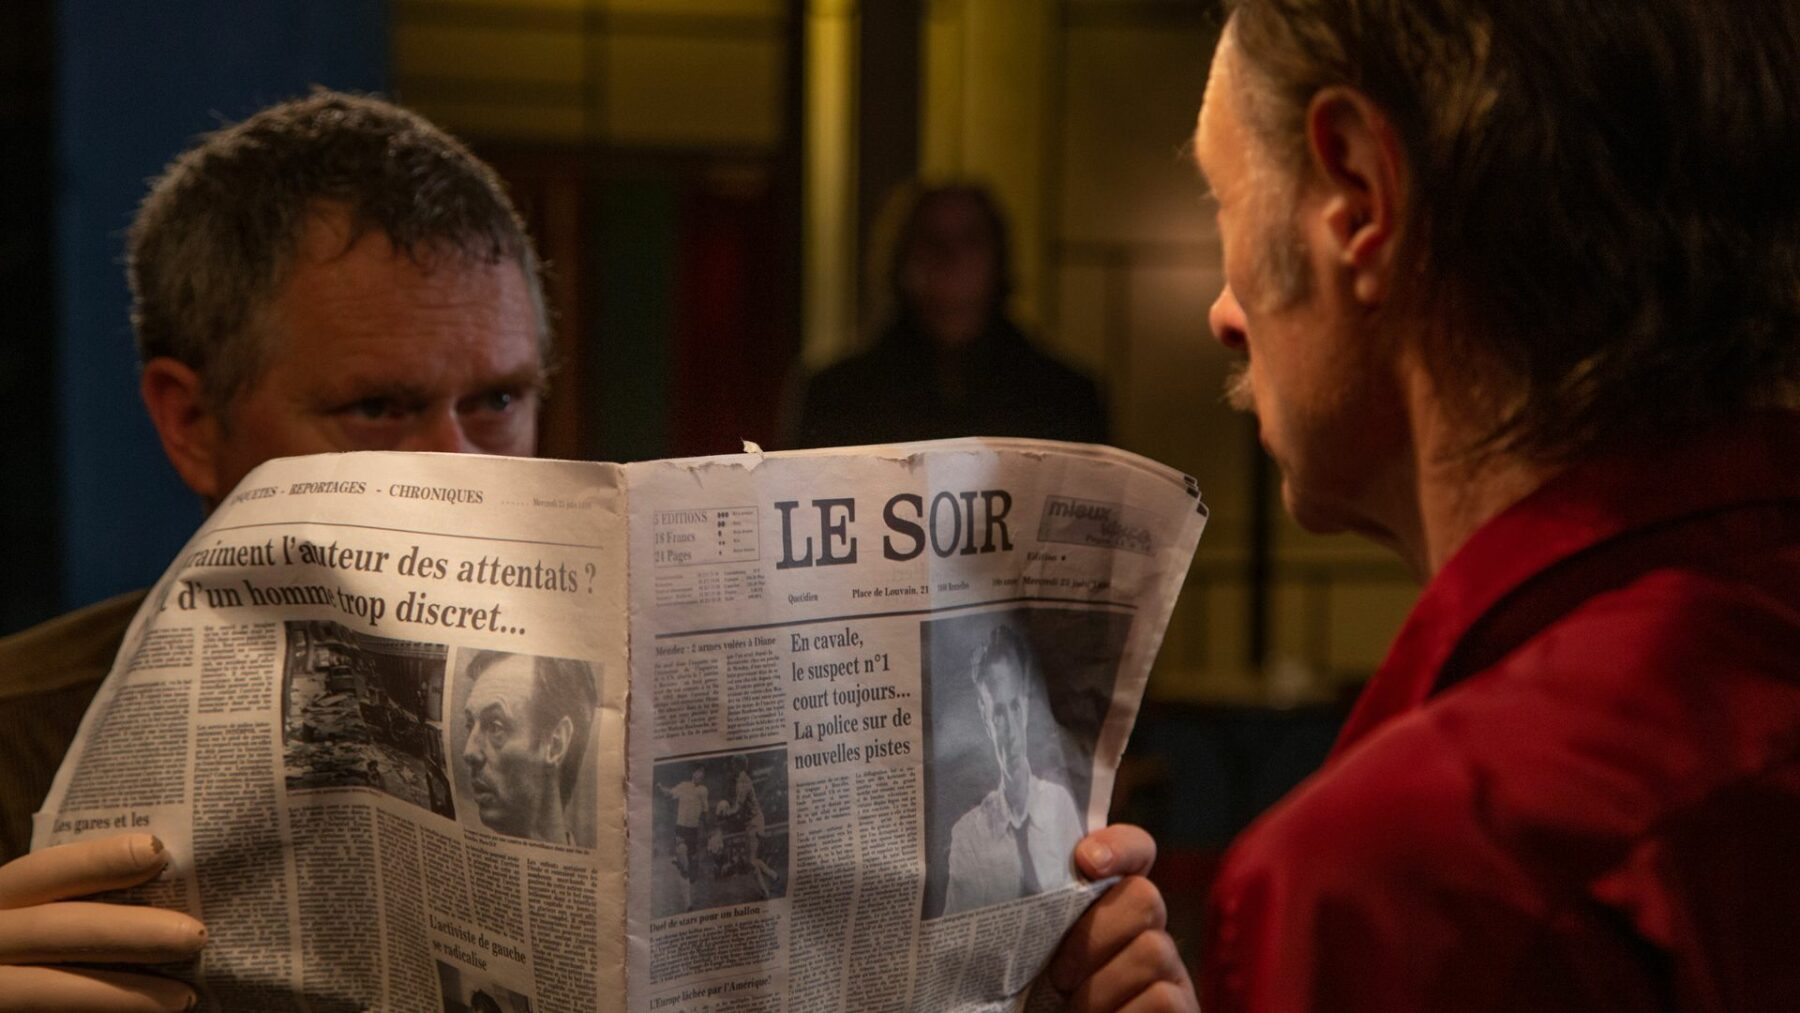 Kadr przedstawia mężczyznę chowającego twarz za gazeta.